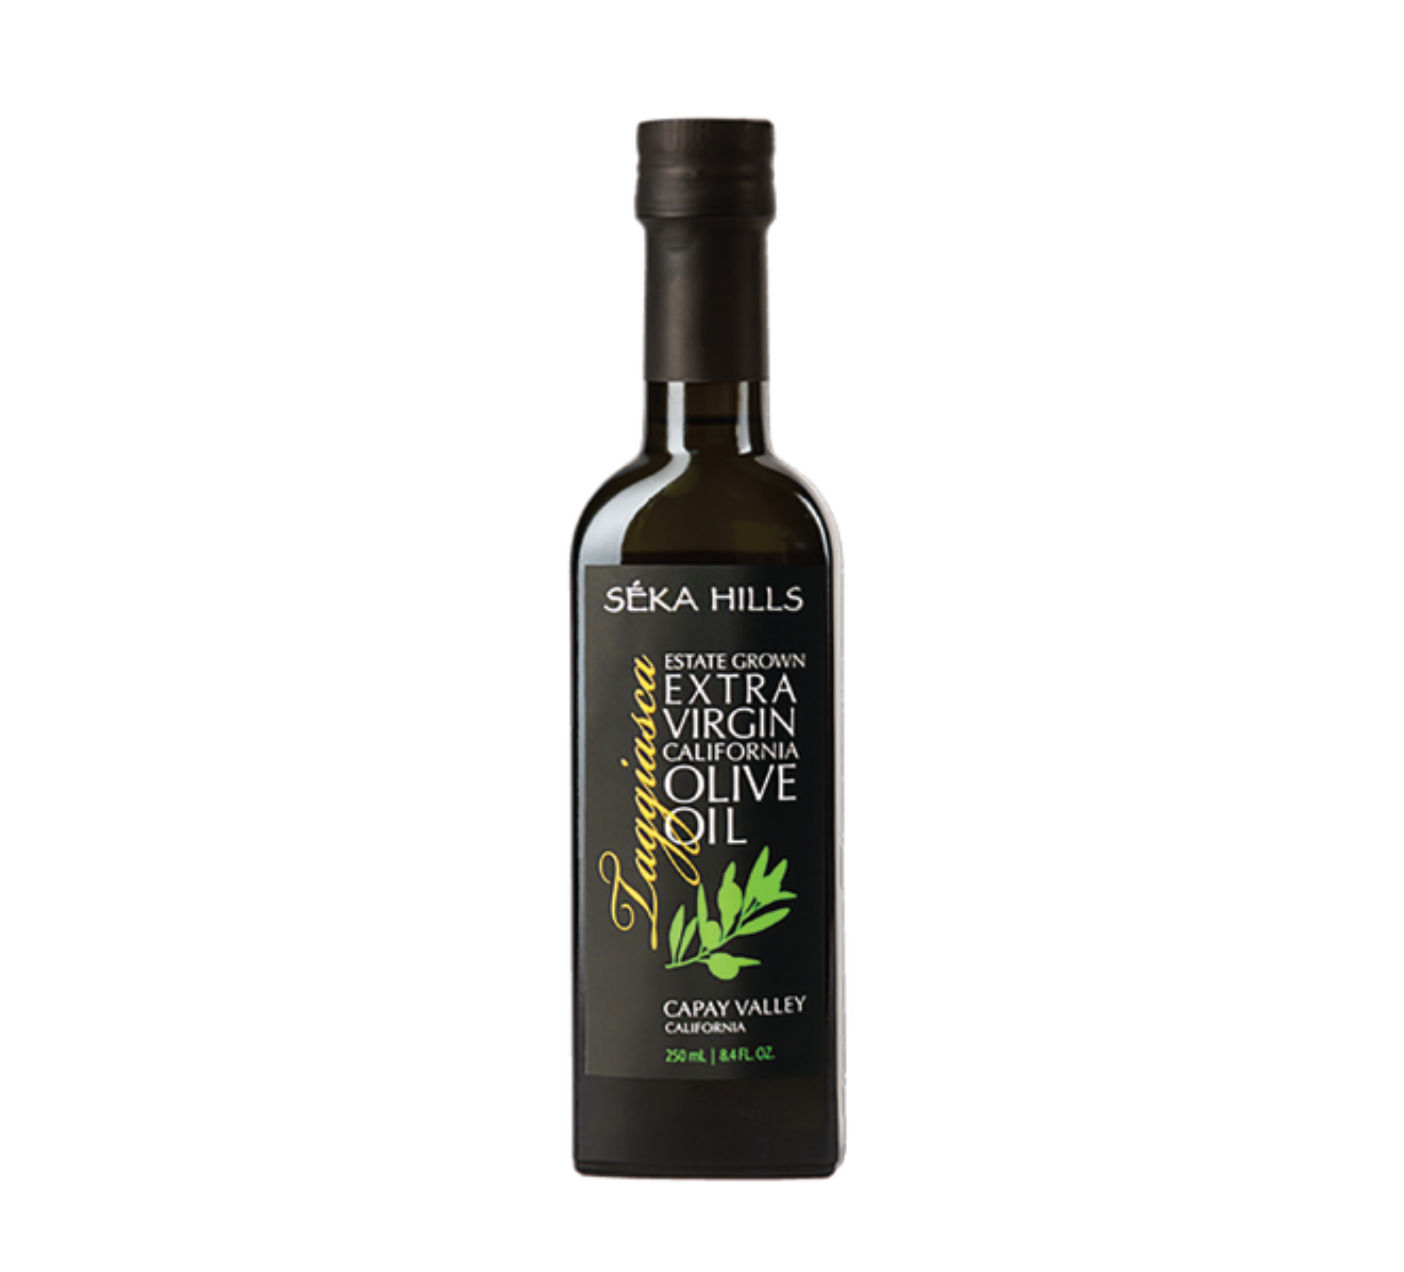 Séka Hills olive oil bottle